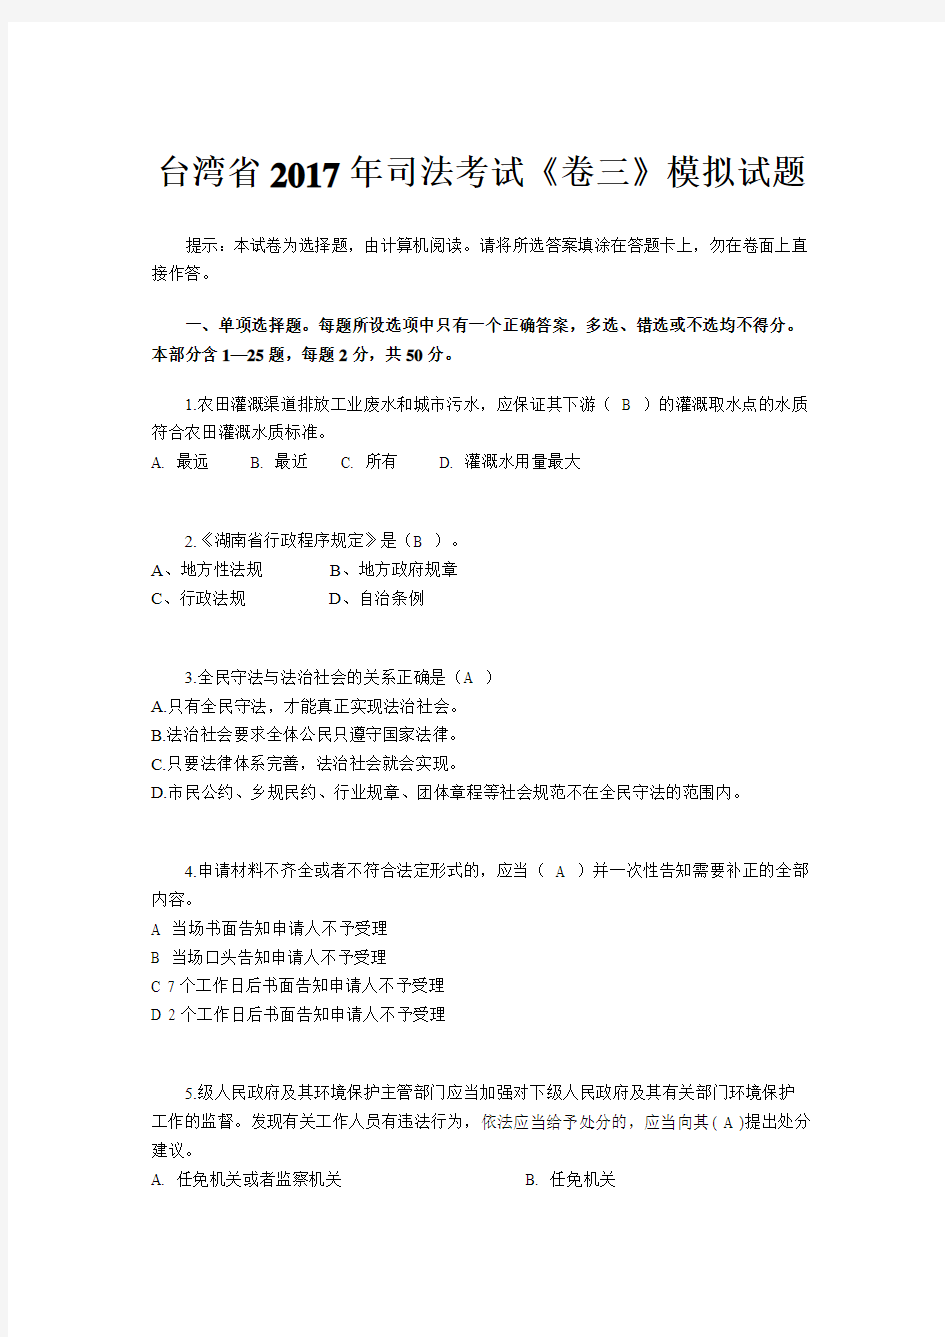 台湾省2017年司法考试《卷三》模拟试题